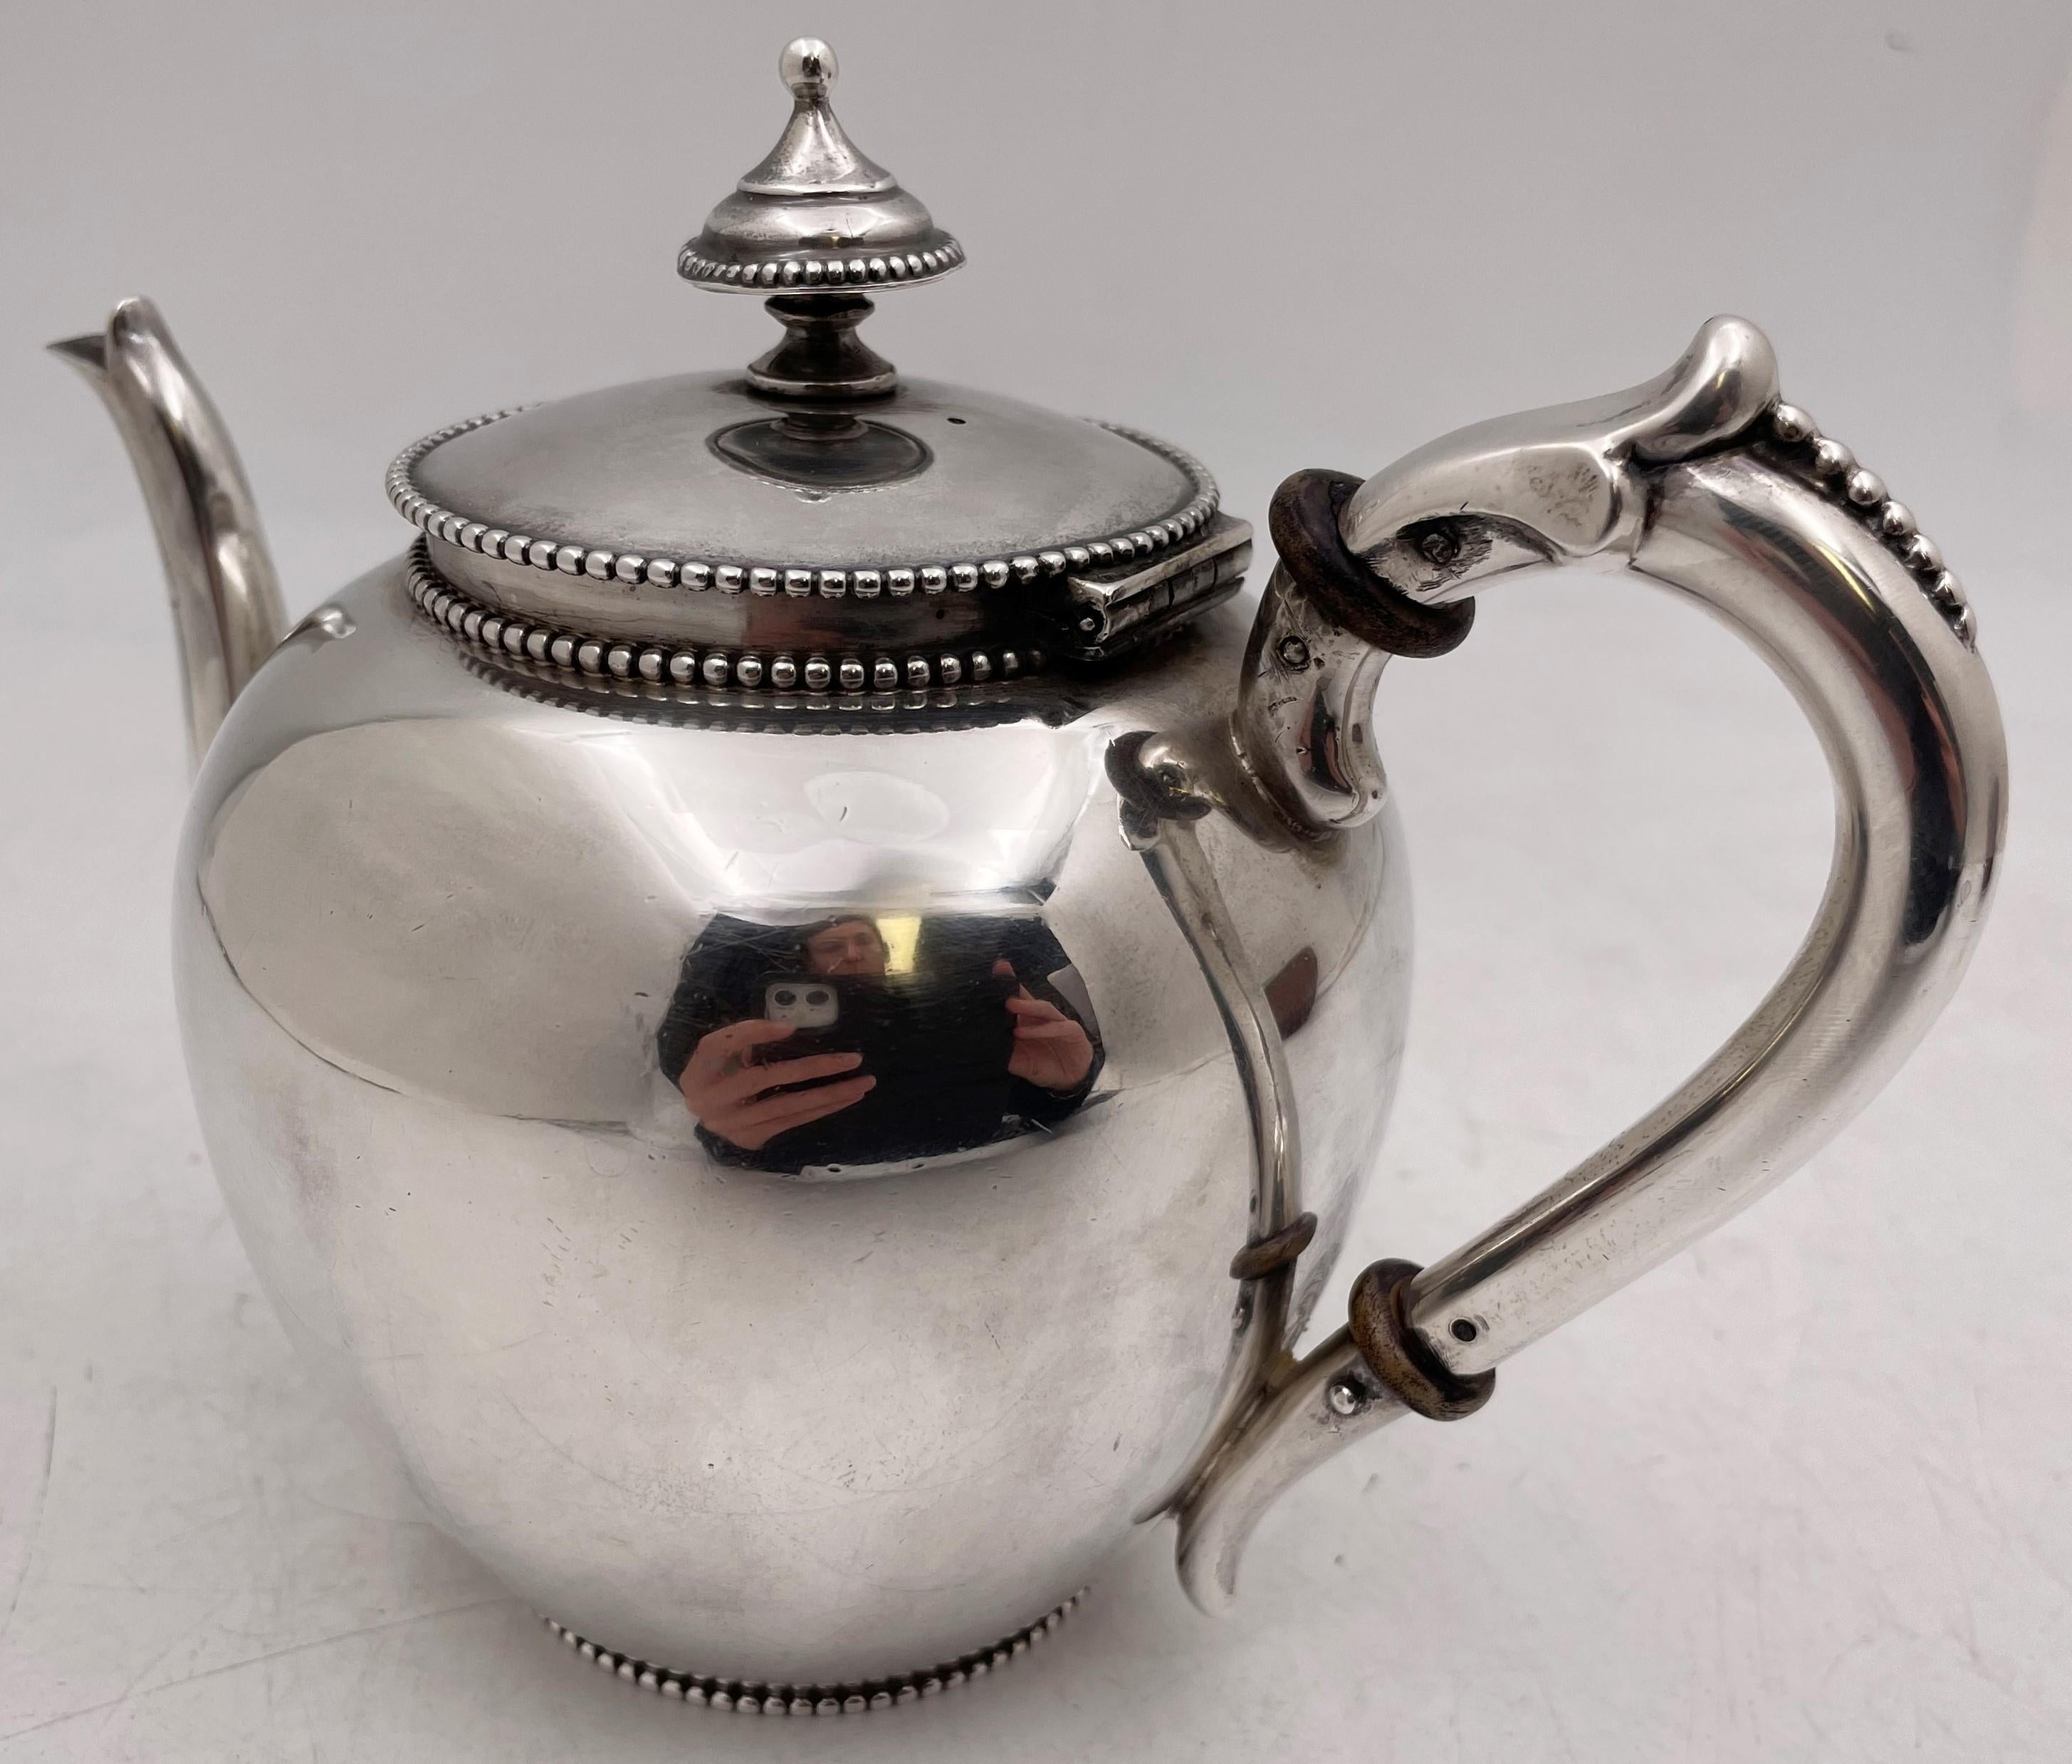 J. M. Van Kempen, holländische Teekanne aus kontinentalem Silber aus dem 19. Jahrhundert, mit Perlenmotiven am Rand, Boden und Henkel und mit elegantem Design. Sie misst 5 3/4'' in der Höhe, 7 5/8'' vom Griff bis zum Ausguss und 4 3/8'' in der